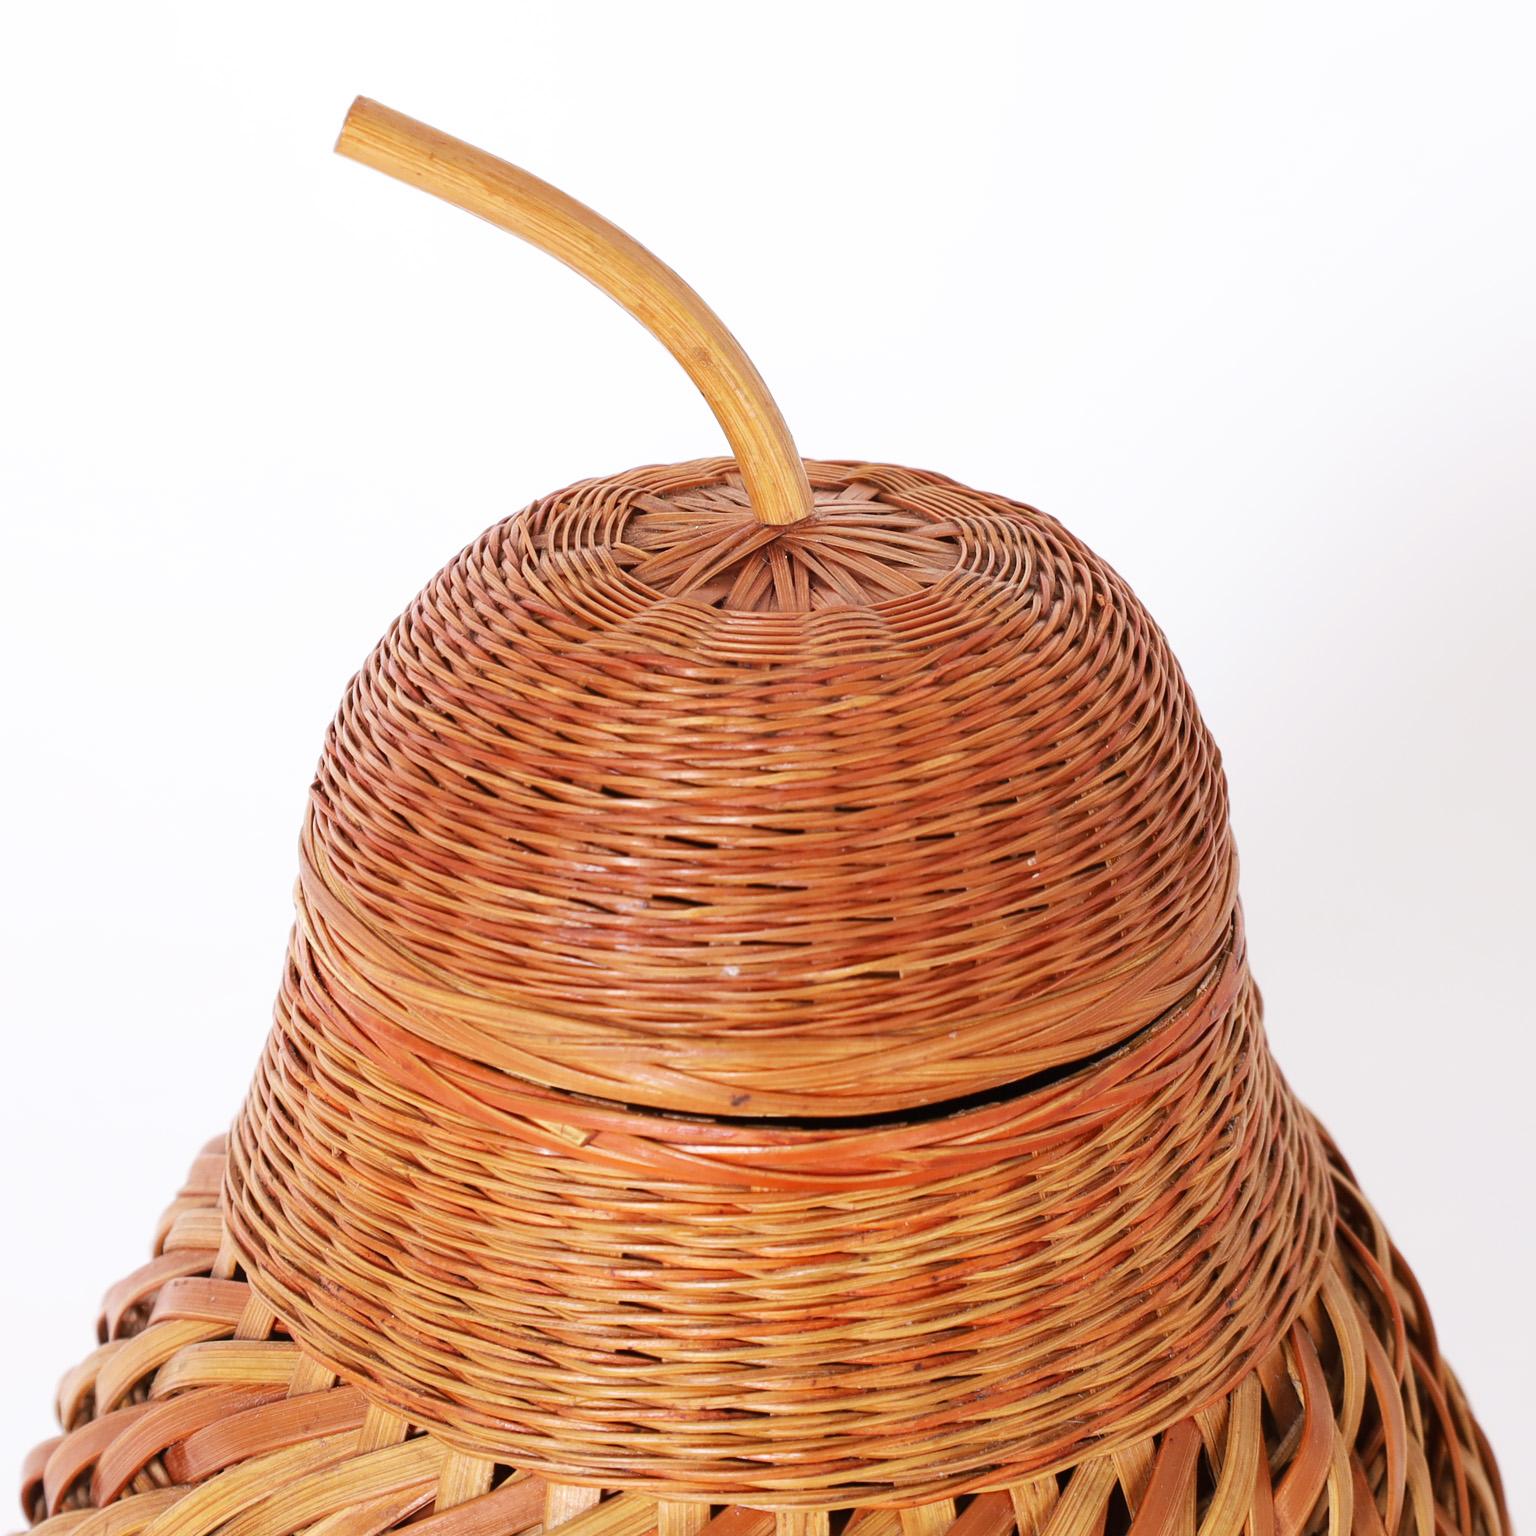 Formschönes birnenförmiges Gefäß mit Deckel, das mit geflochtenem Schilf in verschiedenen Mustern über einem Keramikgefäß anspruchsvoll gestaltet ist.